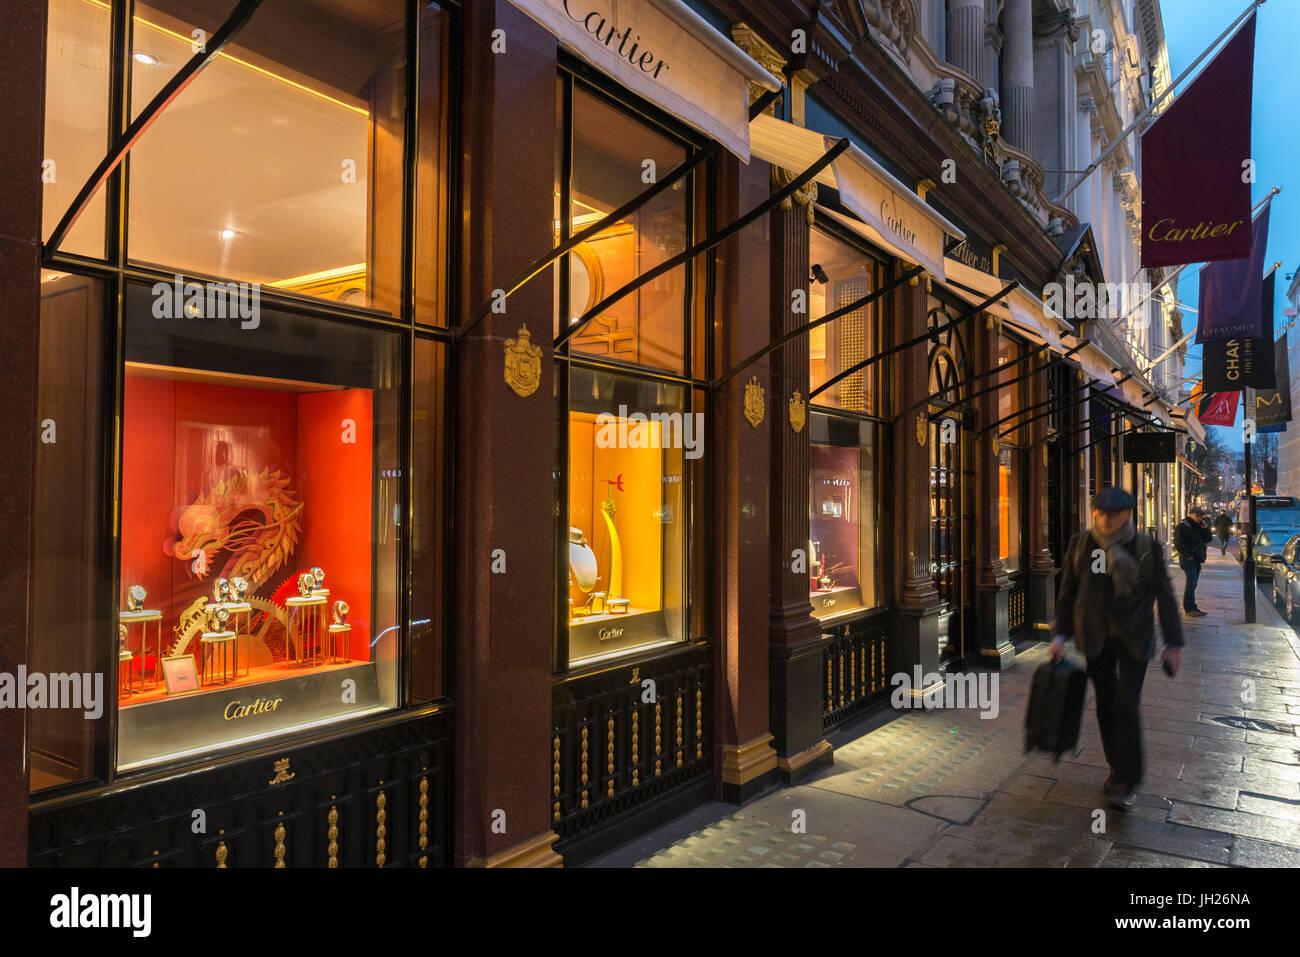 Cartier, New Bond Street, London 